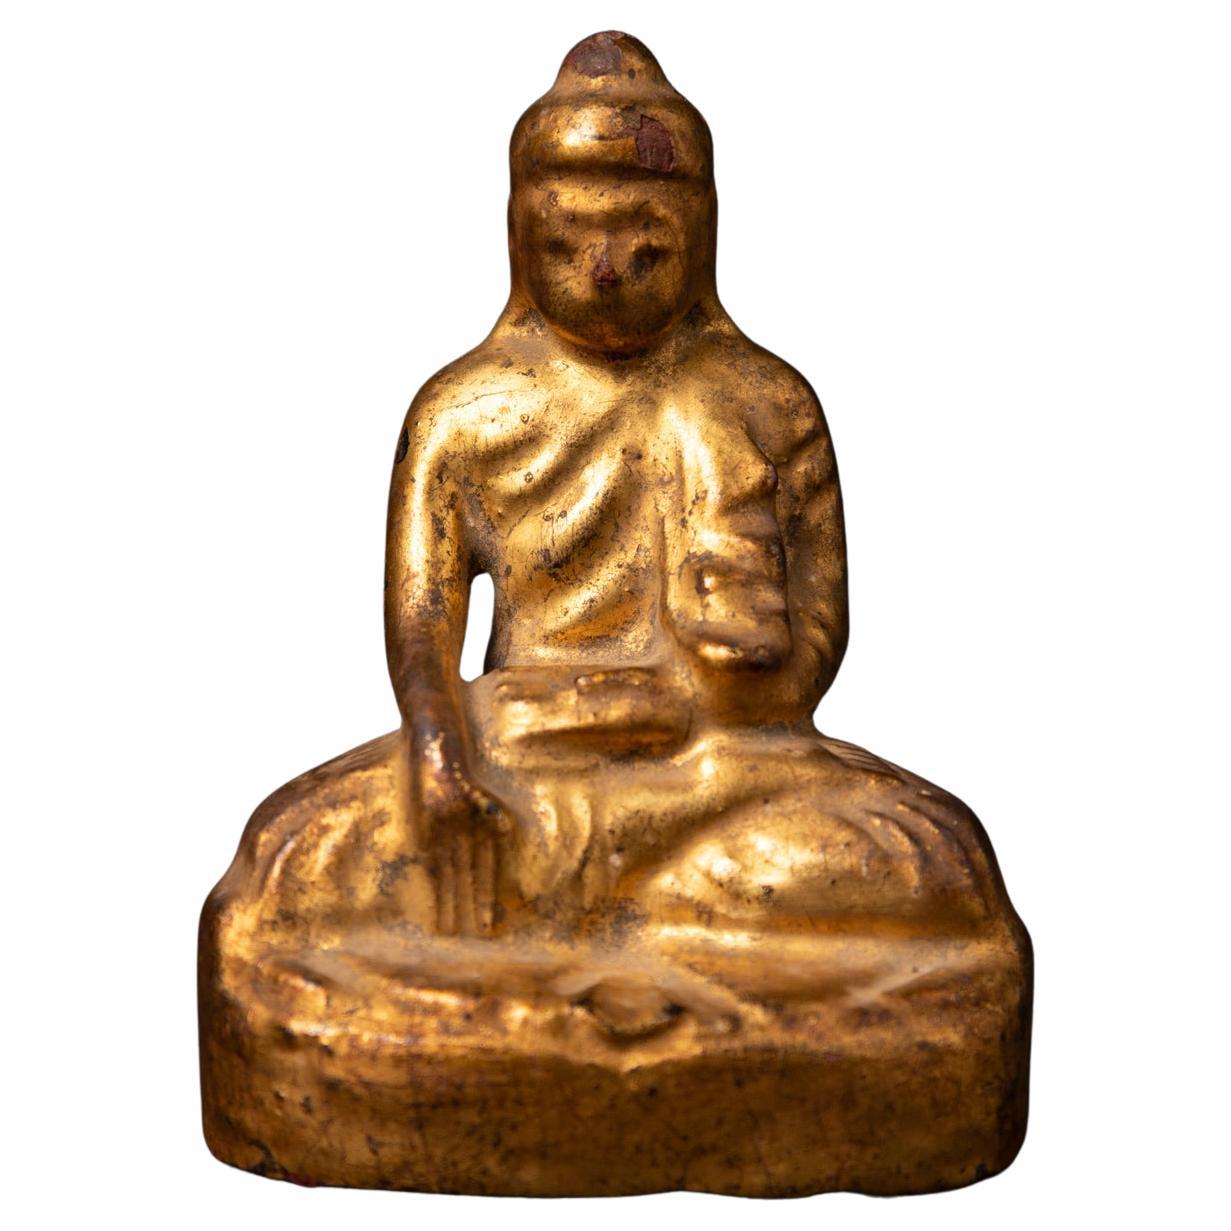 Antike burmesische Buddha-Statue aus Holz aus dem 19. Jahrhundert in Bhumisparsha Mudra